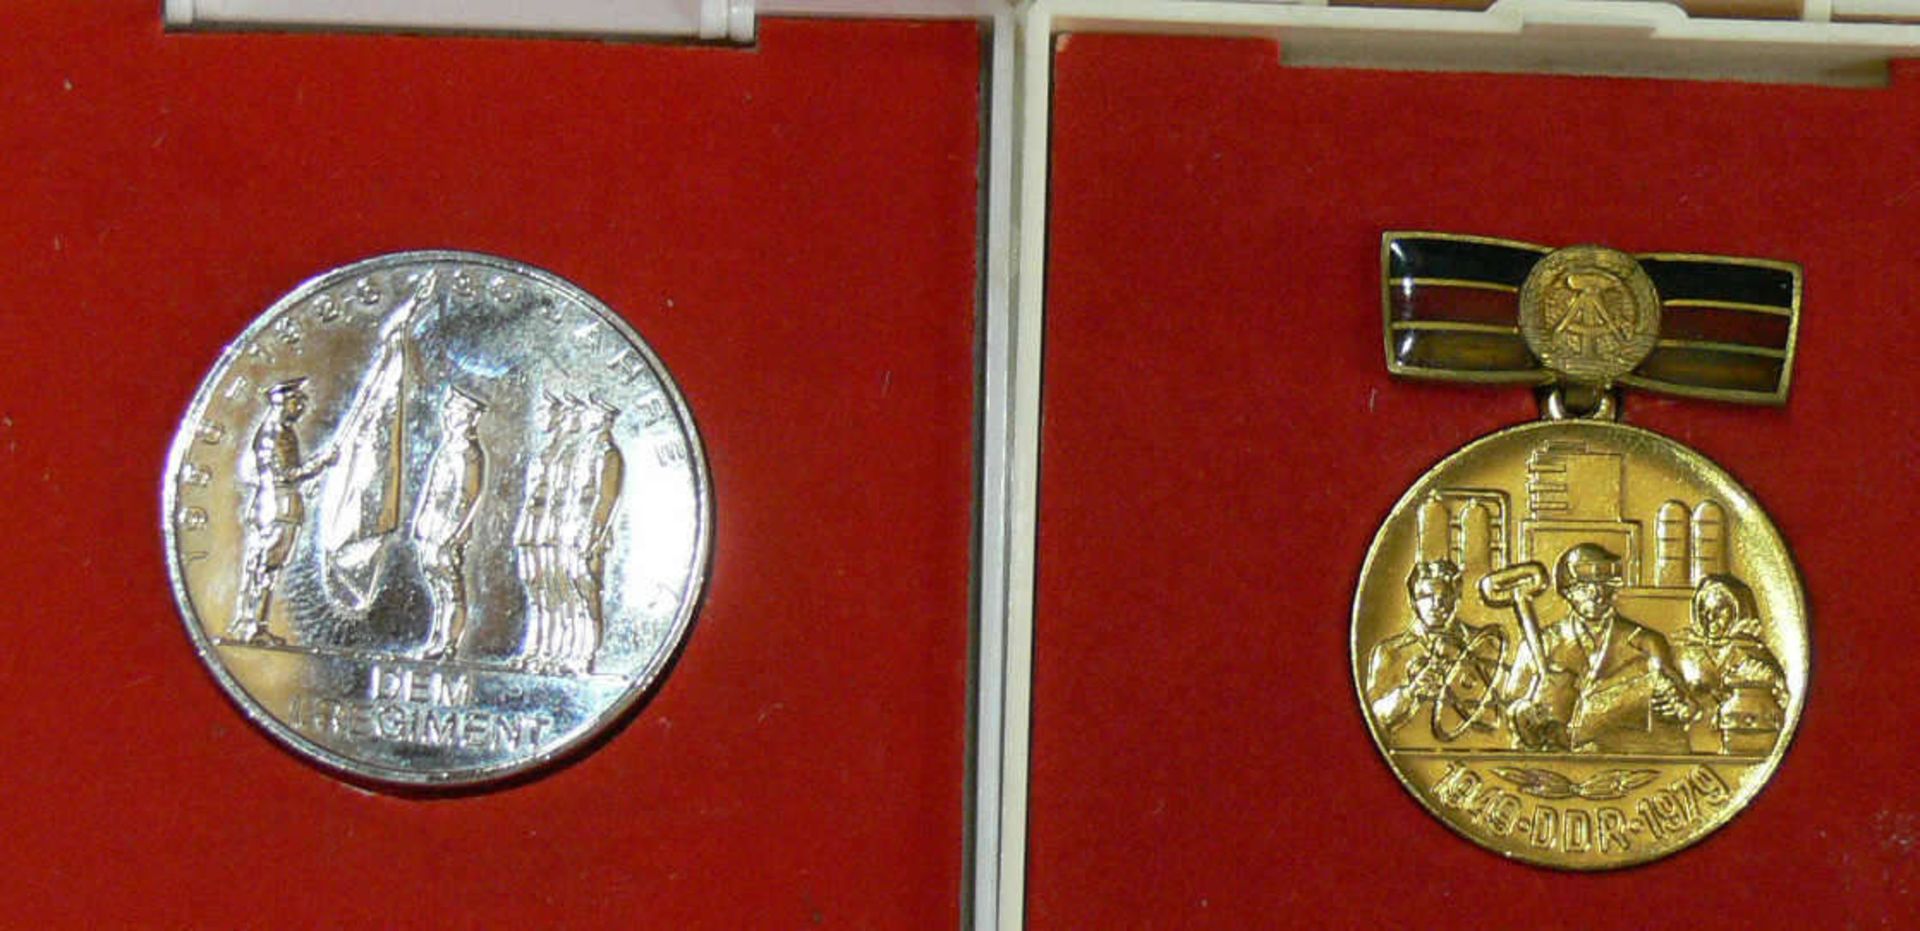 DDR, zwei Medaillen, 1 x 30 Jahre DDR 1949-1979 und 30 Jahre NVA 1956-1986. Beide in orig. Boxen.